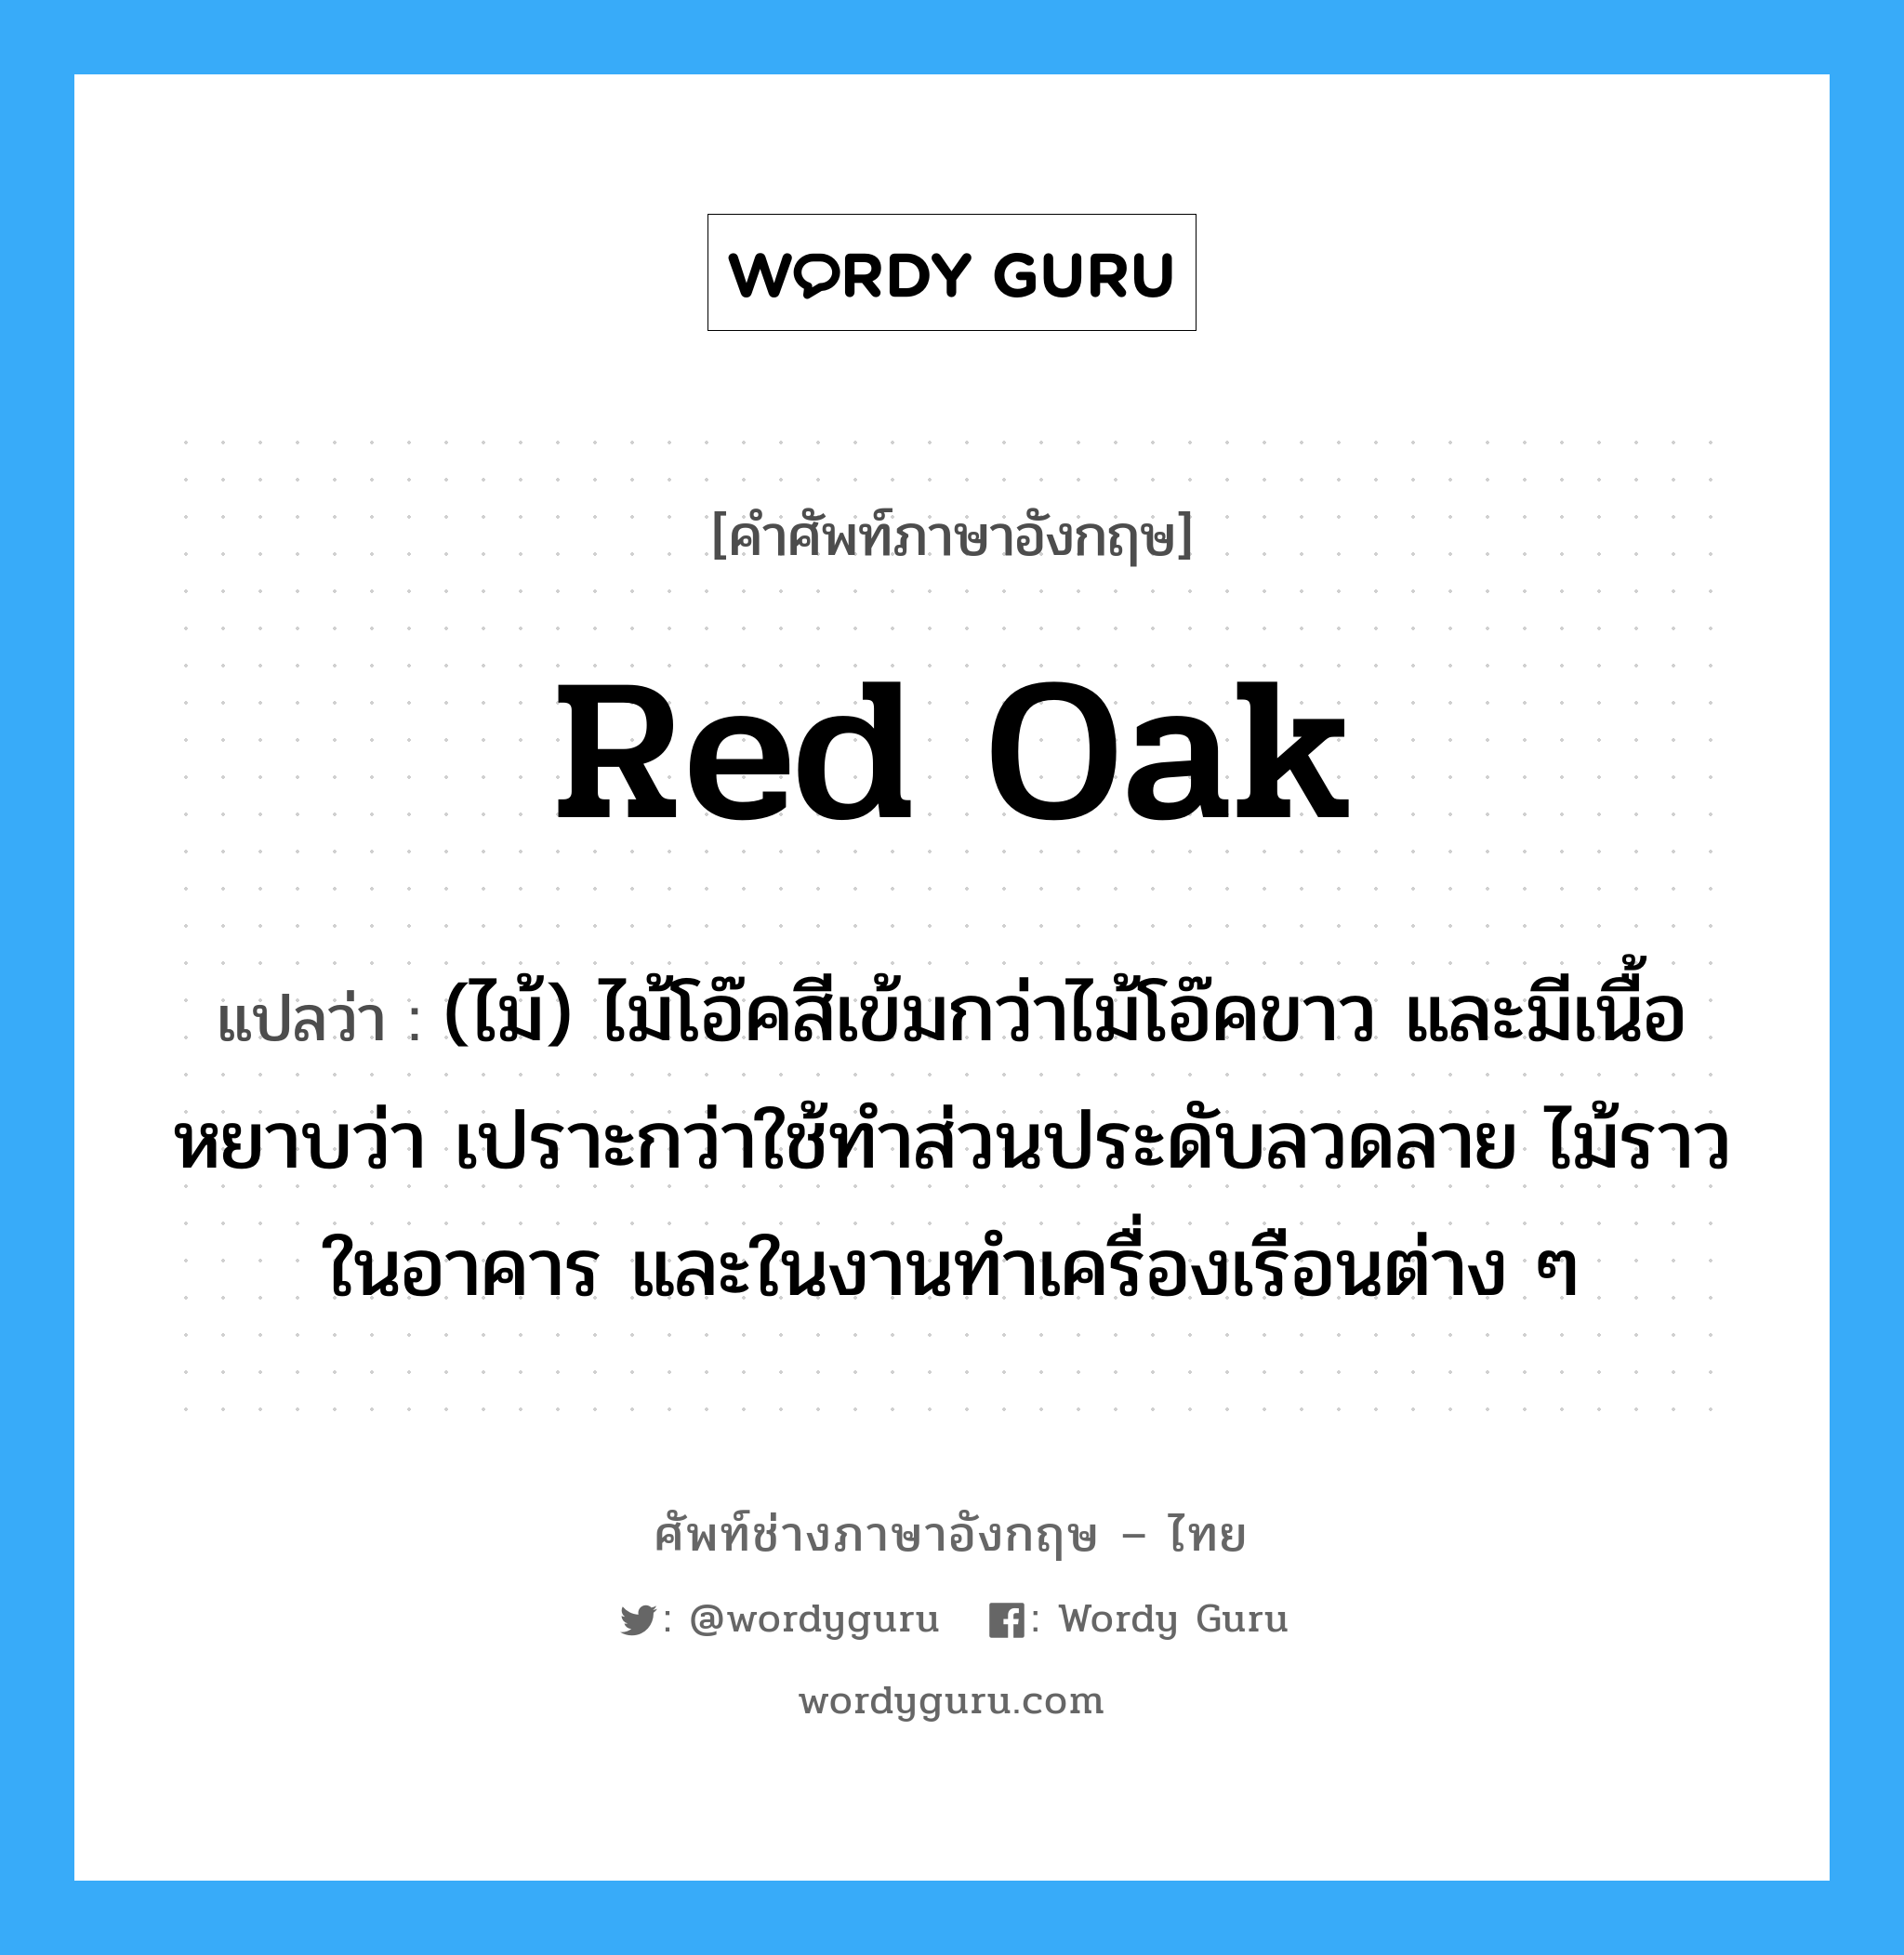 red oak แปลว่า?, คำศัพท์ช่างภาษาอังกฤษ - ไทย red oak คำศัพท์ภาษาอังกฤษ red oak แปลว่า (ไม้) ไม้โอ๊คสีเข้มกว่าไม้โอ๊คขาว และมีเนื้อหยาบว่า เปราะกว่าใช้ทำส่วนประดับลวดลาย ไม้ราวในอาคาร และในงานทำเครื่องเรือนต่าง ๆ